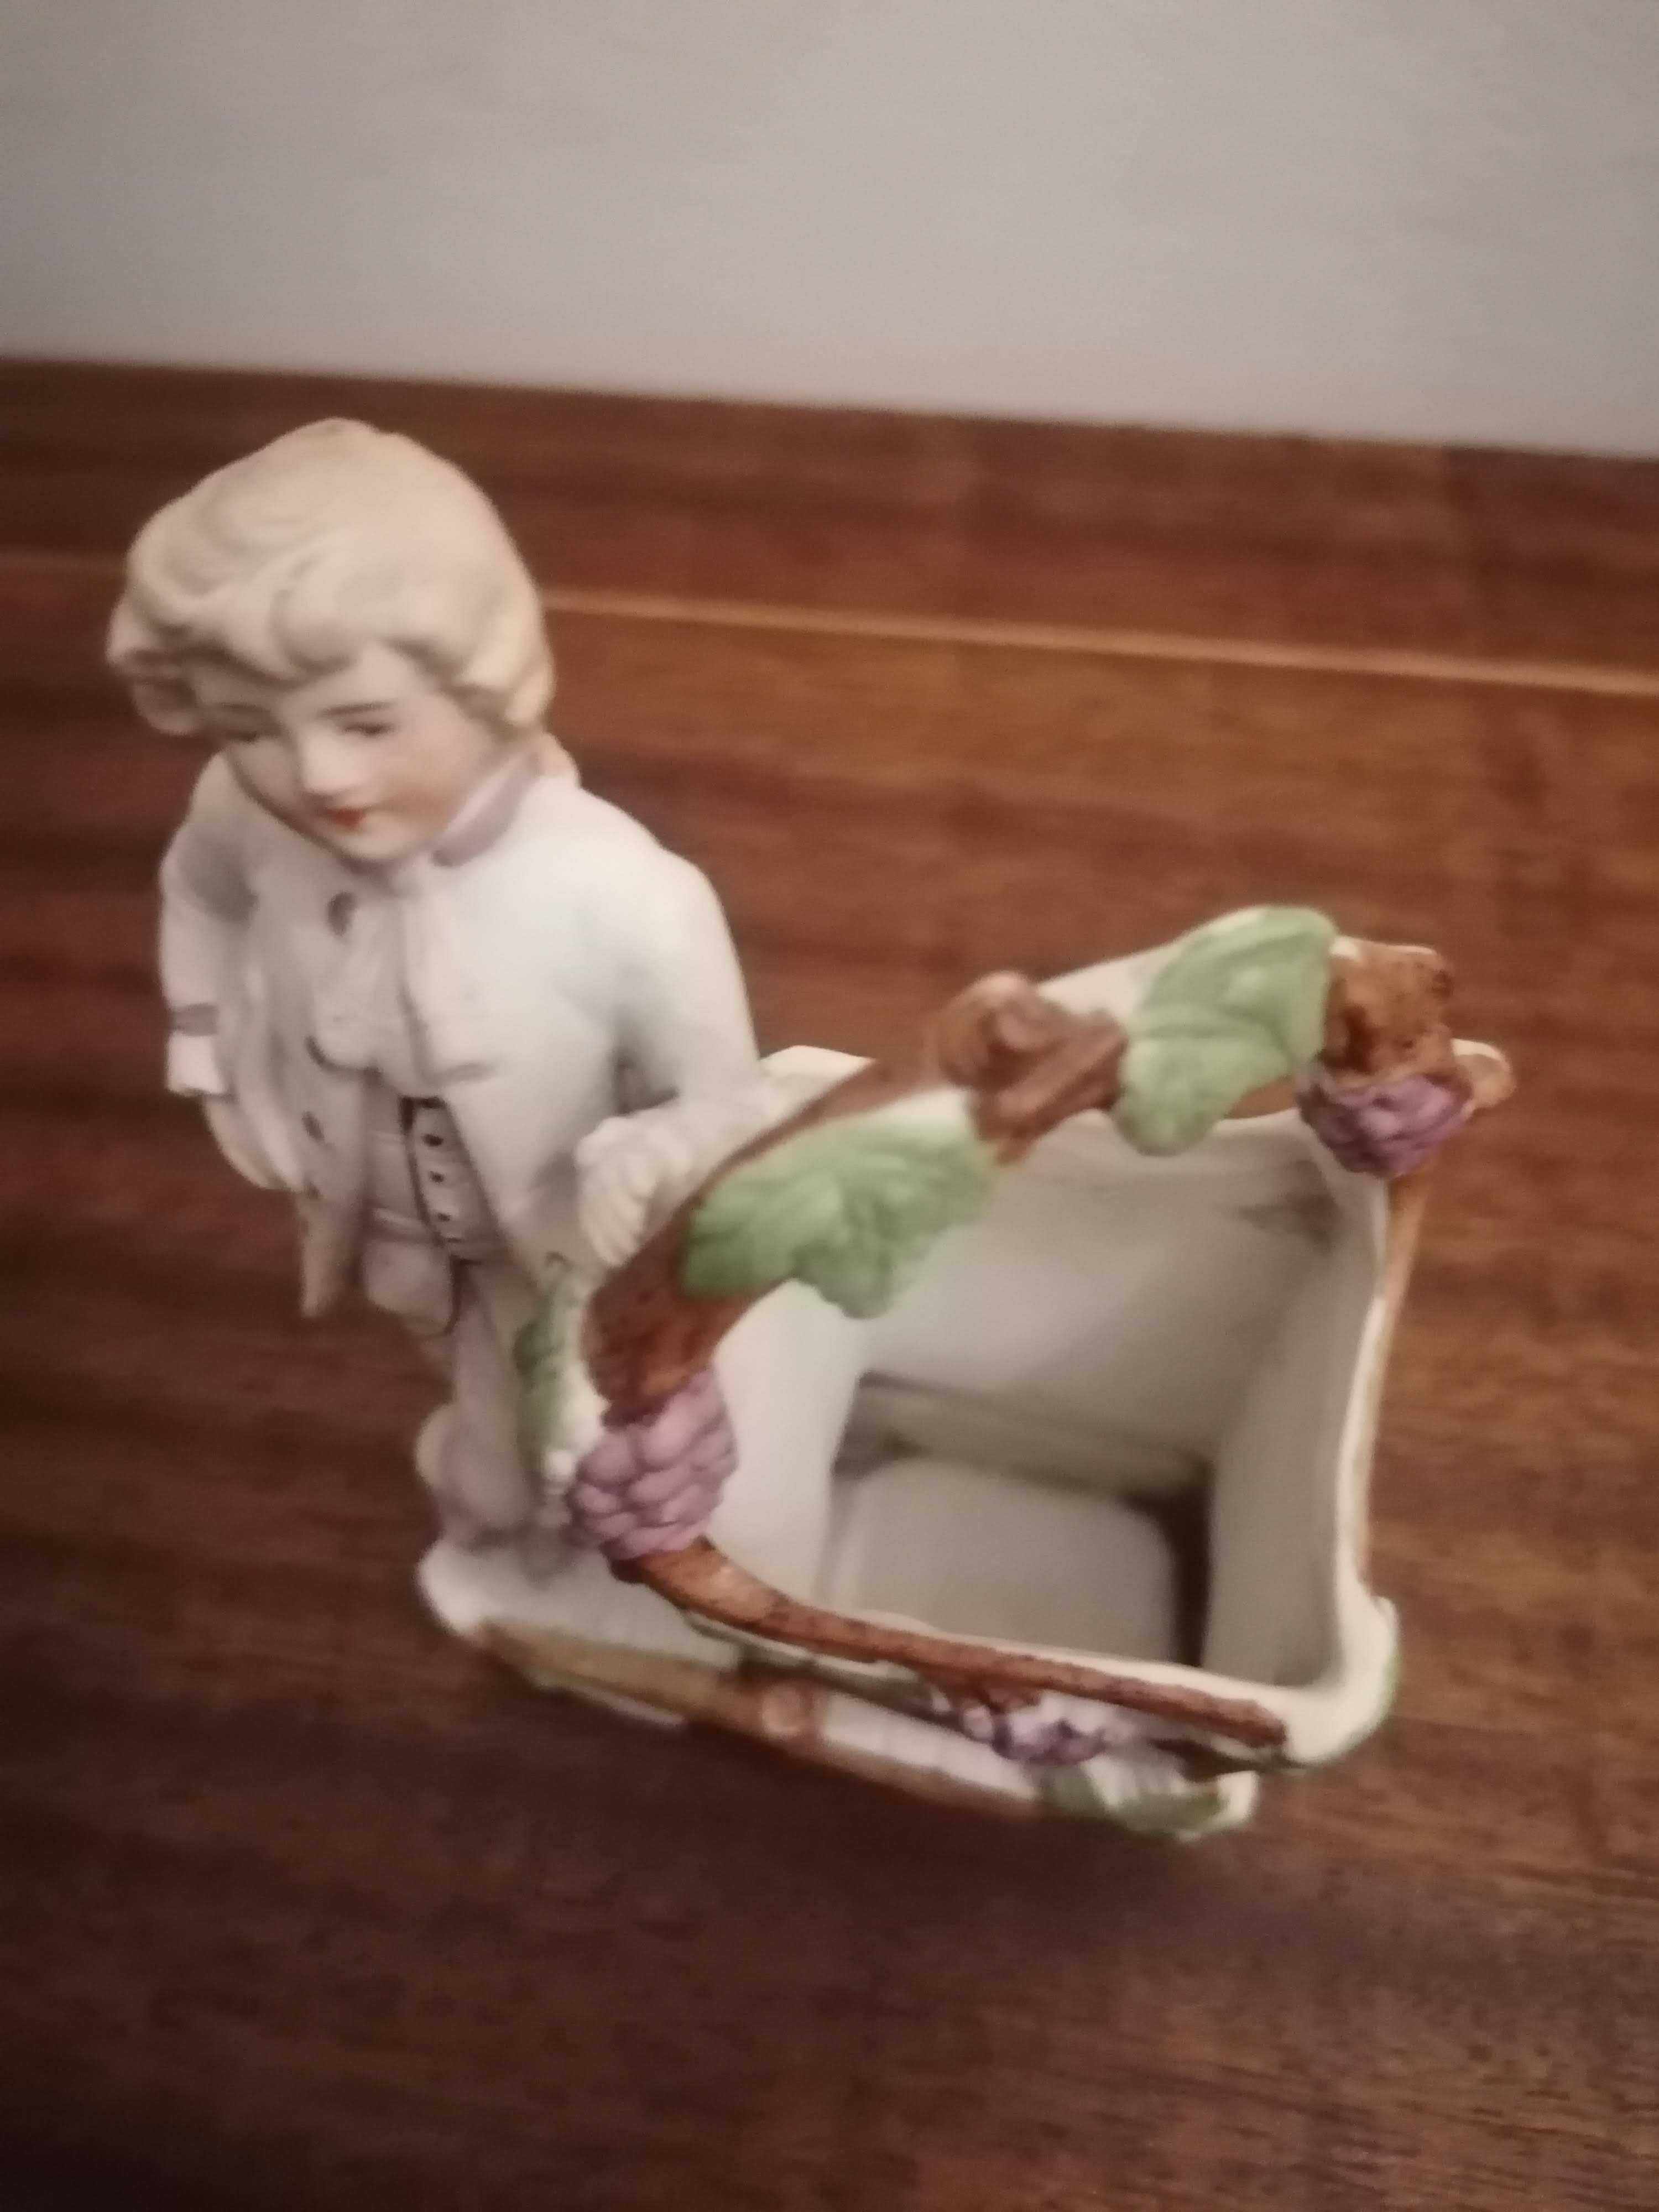 Pajem com cesta floreira Vintage em Biscuit de porcelana